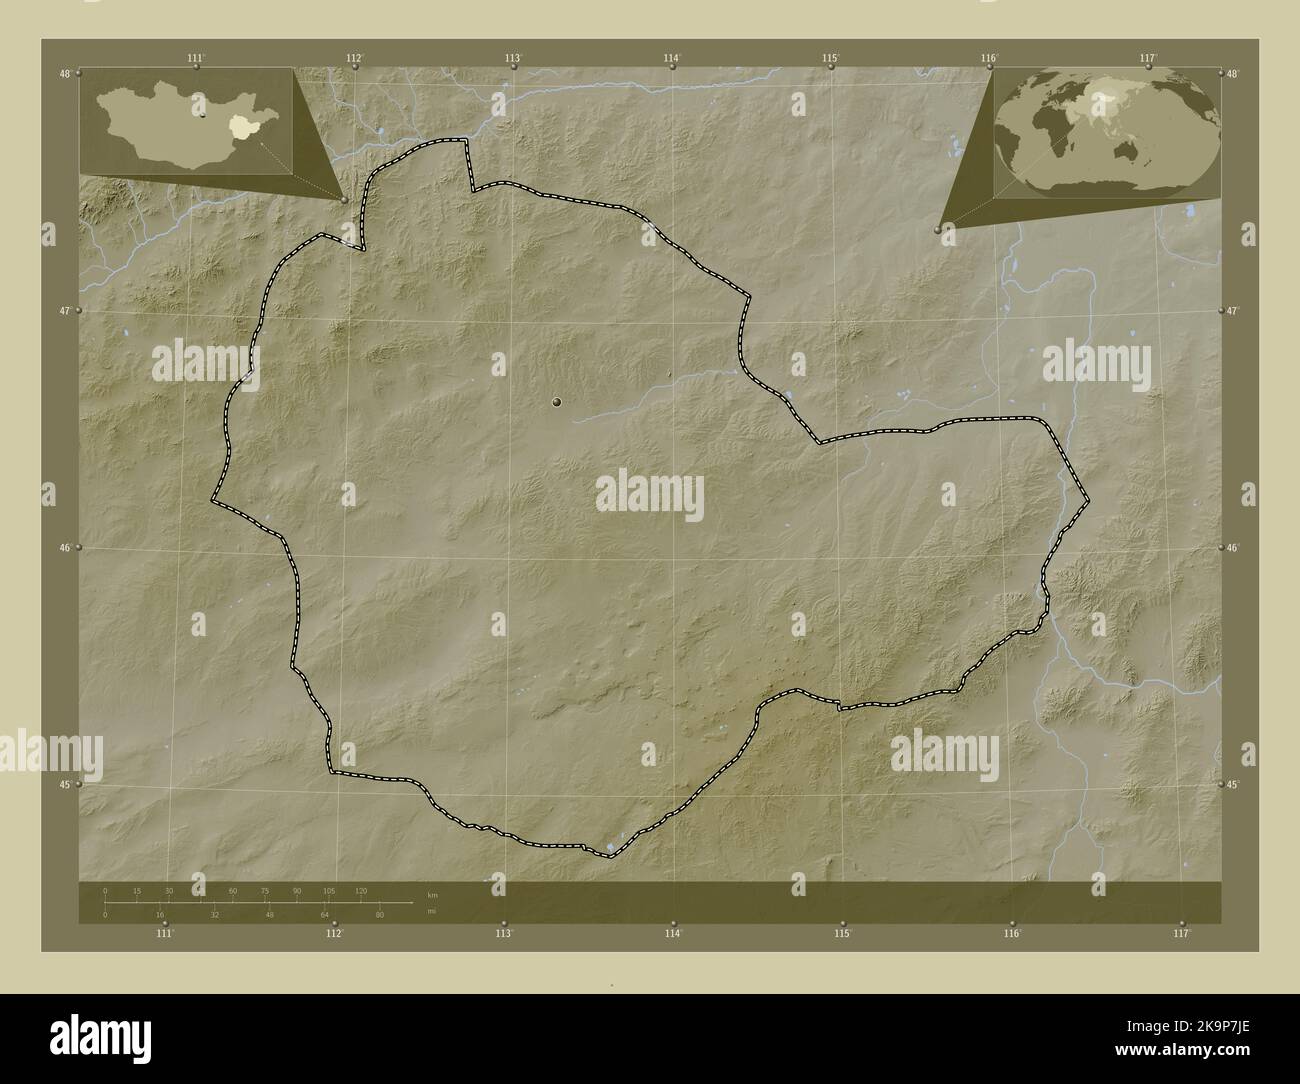 Suhbaatar, province de Mongolie. Carte d'altitude colorée en style wiki avec lacs et rivières. Cartes d'emplacement auxiliaire d'angle Banque D'Images